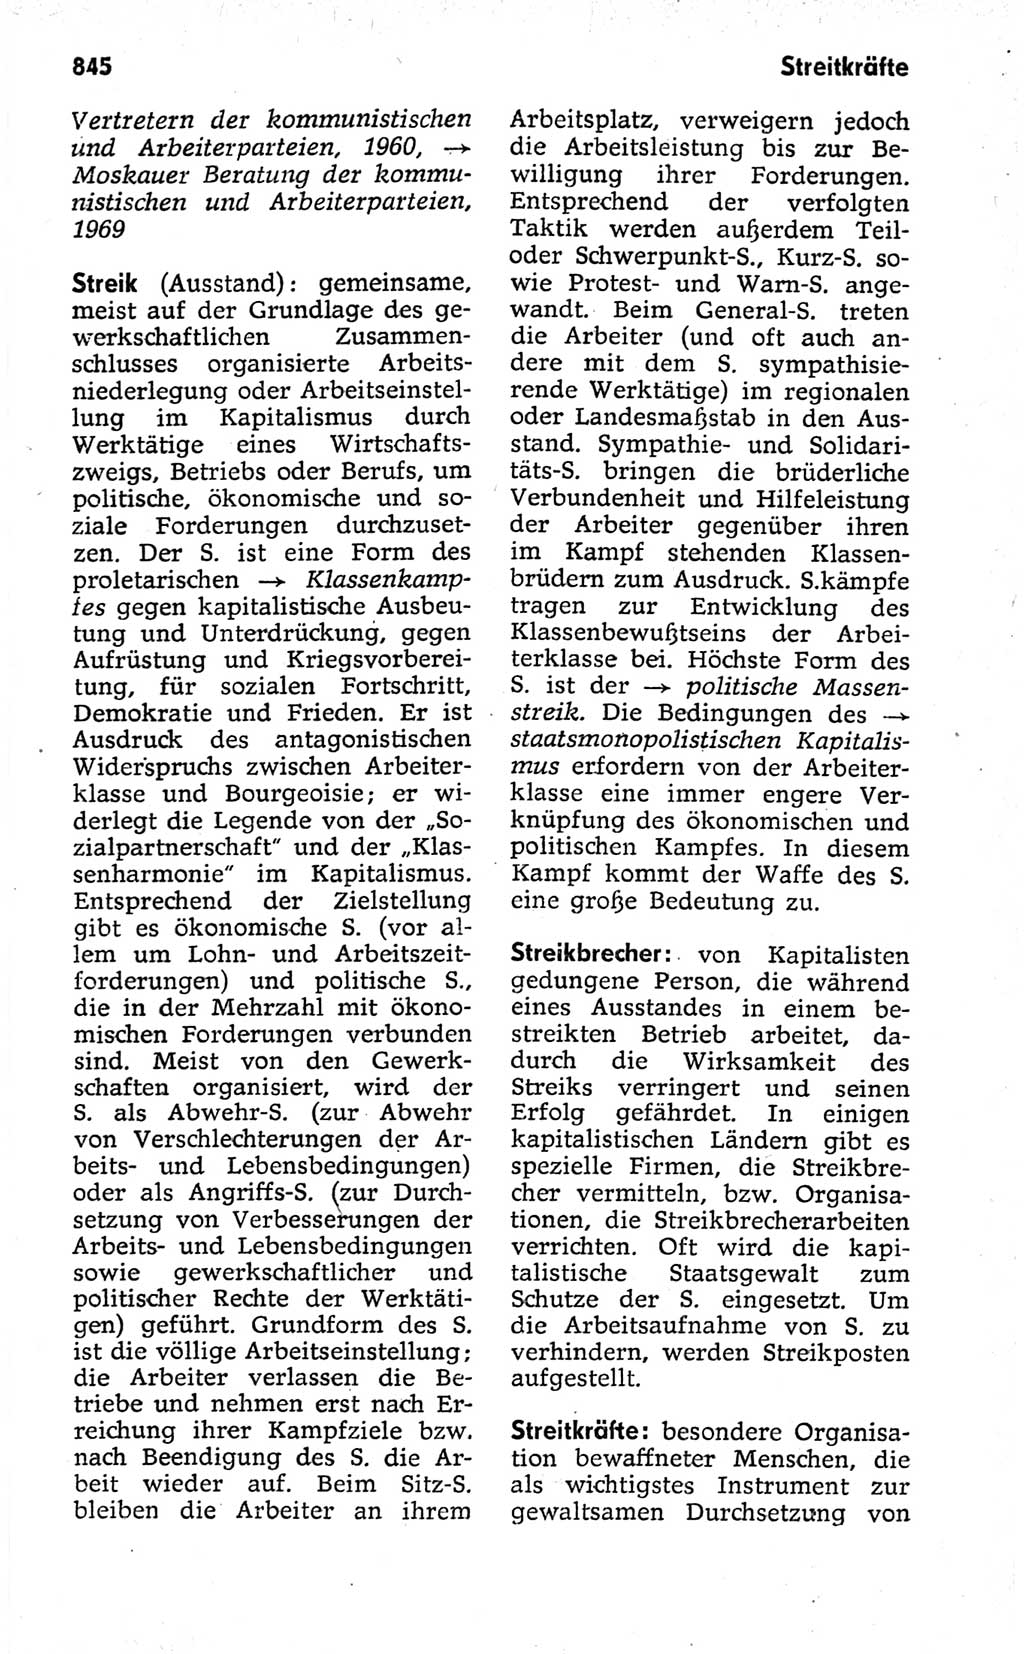 Kleines politisches Wörterbuch [Deutsche Demokratische Republik (DDR)] 1973, Seite 845 (Kl. pol. Wb. DDR 1973, S. 845)